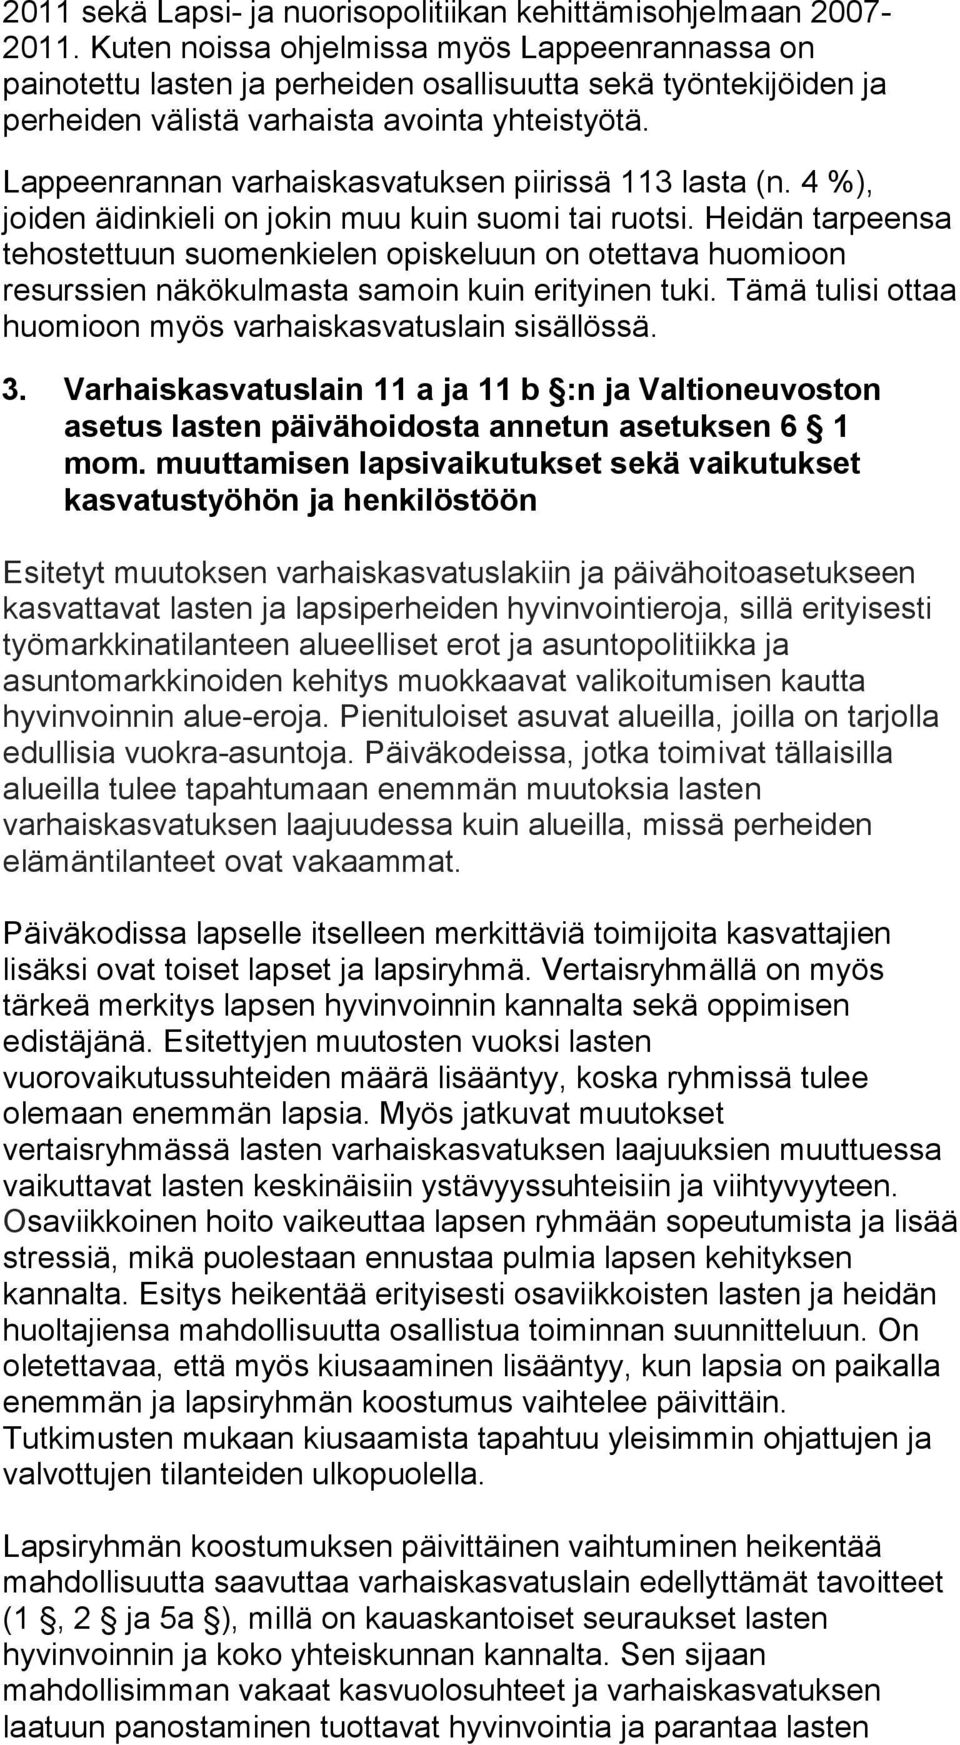 Lappeenrannan varhaiskasvatuksen piirissä 113 lasta (n. 4 %), joiden äidinkieli on jokin muu kuin suomi tai ruotsi.